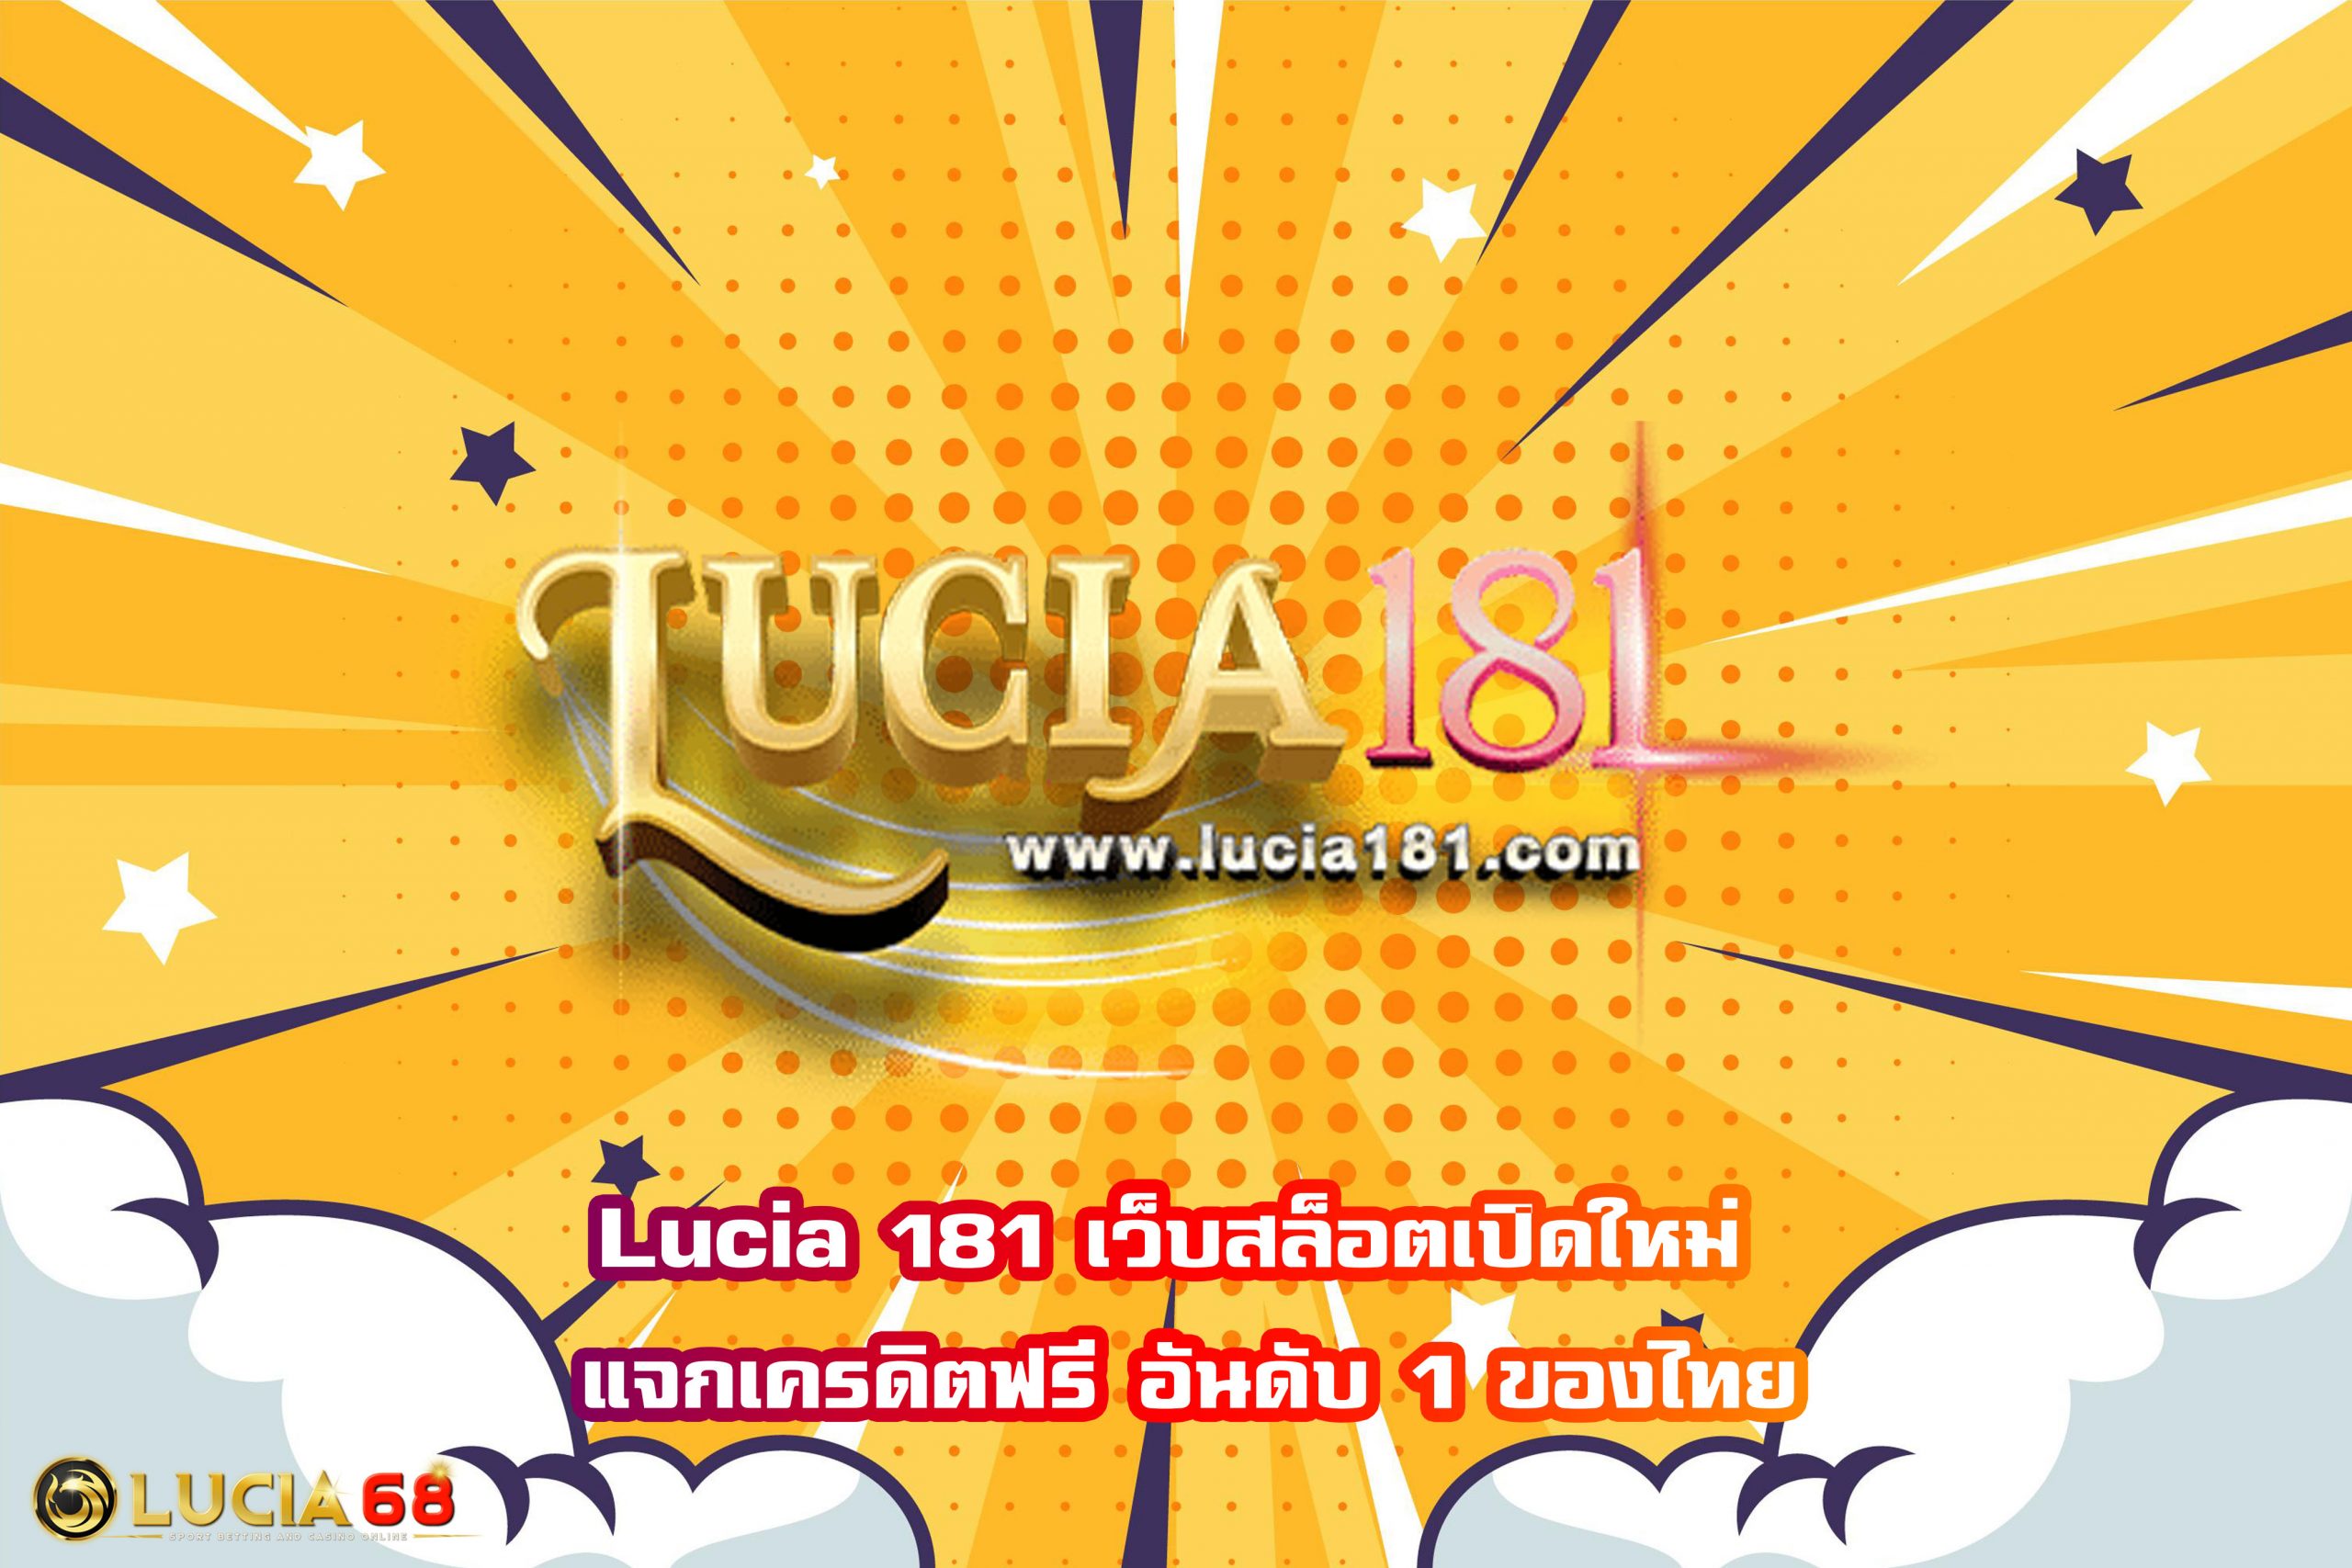 Lucia 181 เว็บสล็อตเปิดใหม่ แจกเครดิตฟรี อันดับ 1 ของไทย